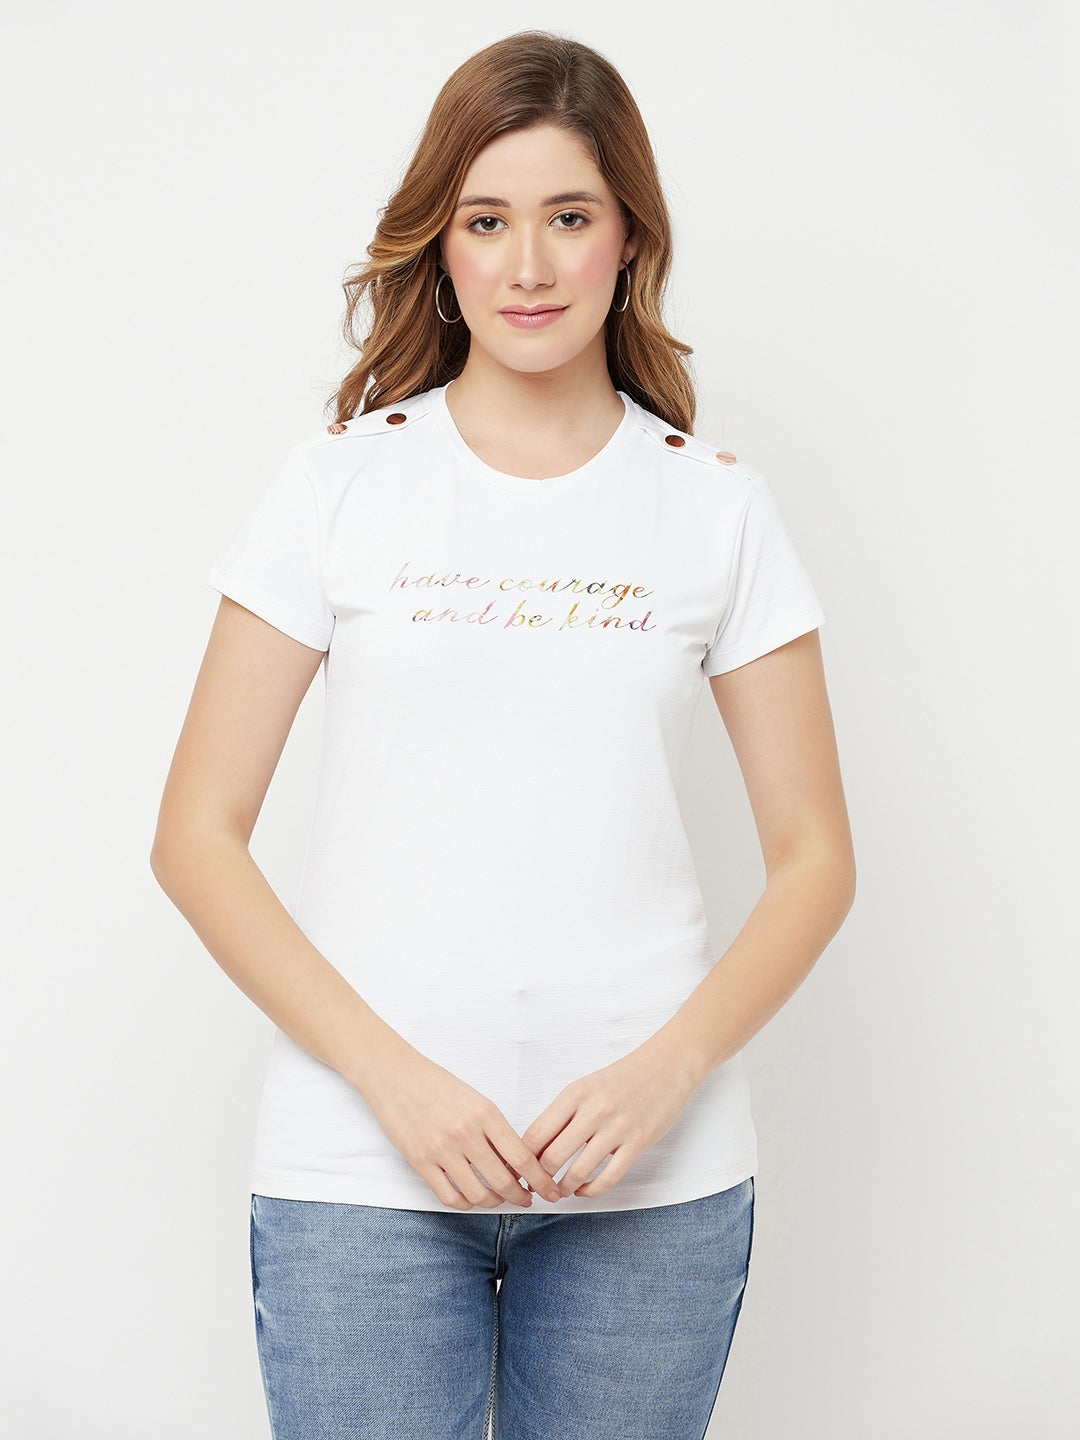 White Printed Round Neck T-Shirt - Women T-Shirts